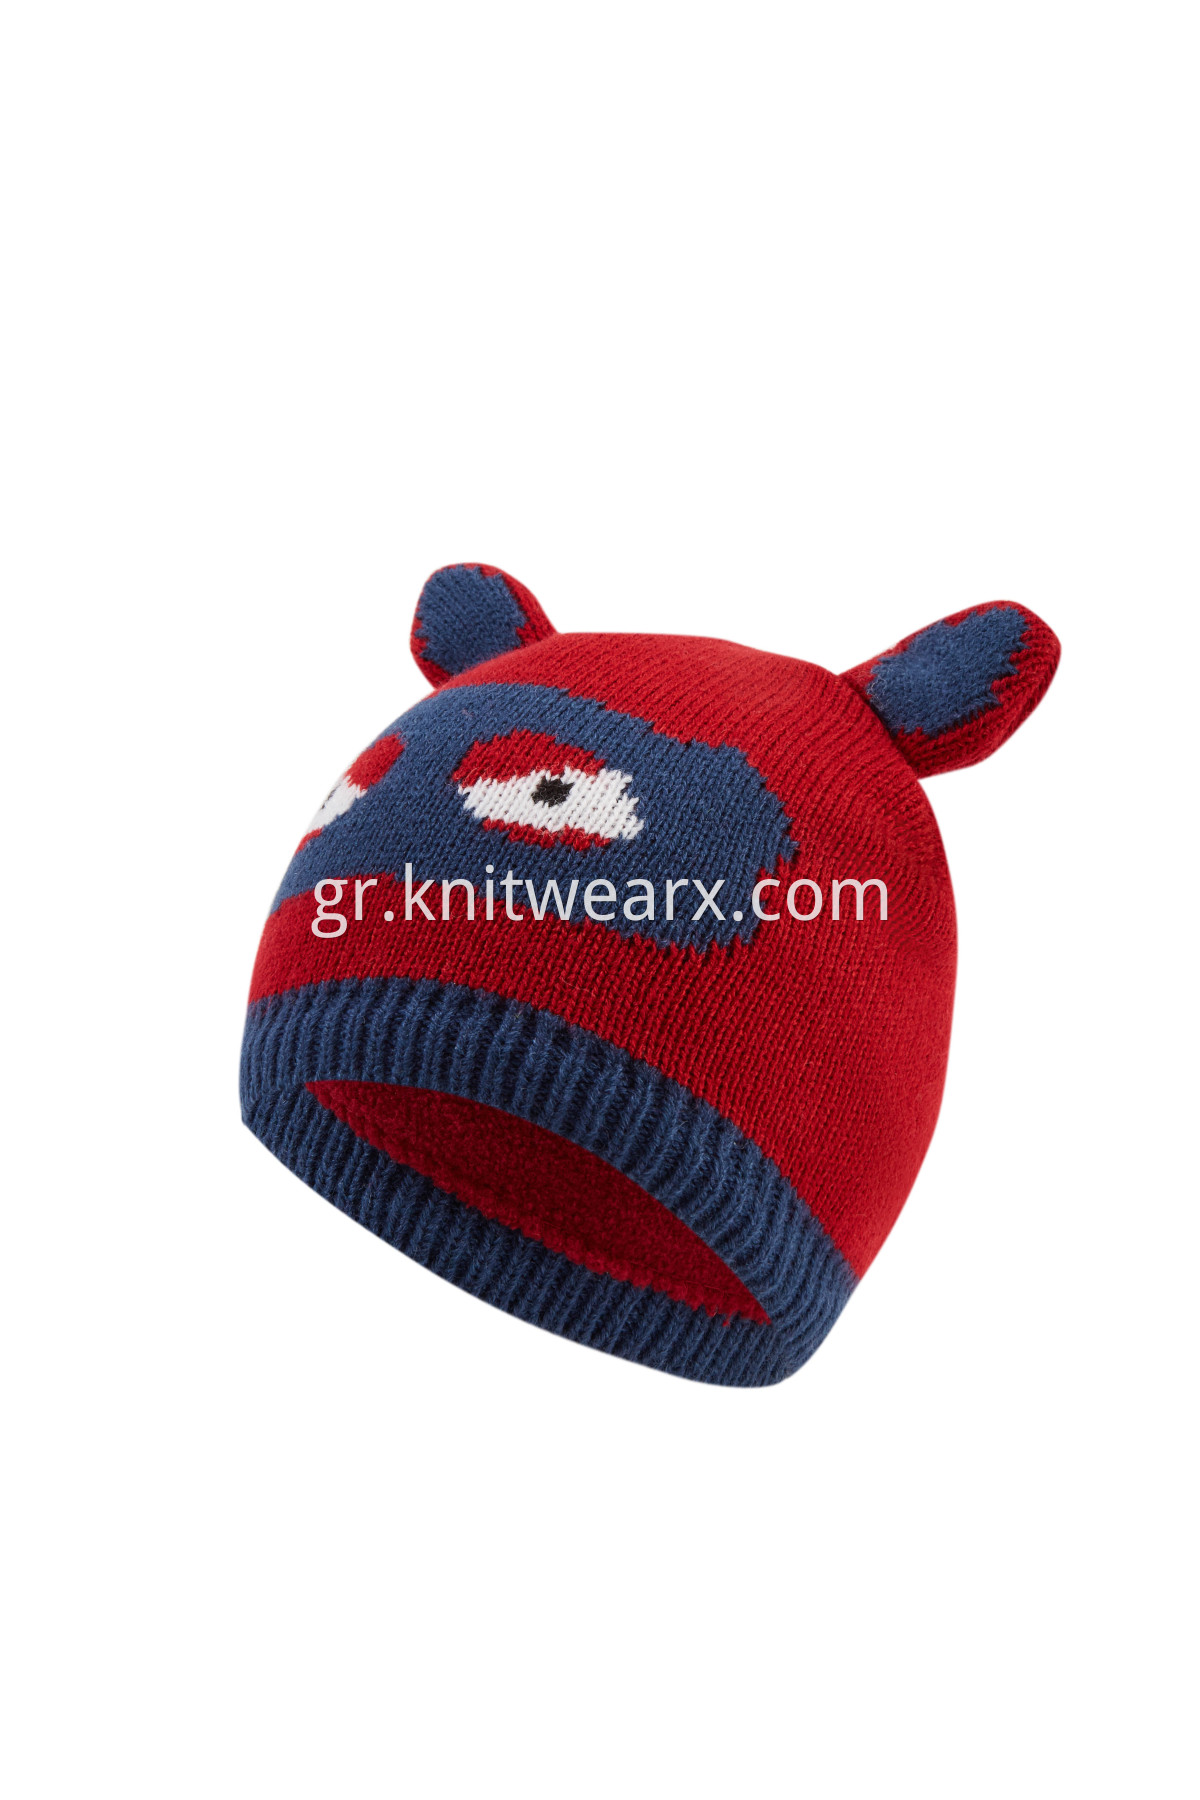 Boy's Winter Warm Fleece Lined Hats Beanie Knit Cap